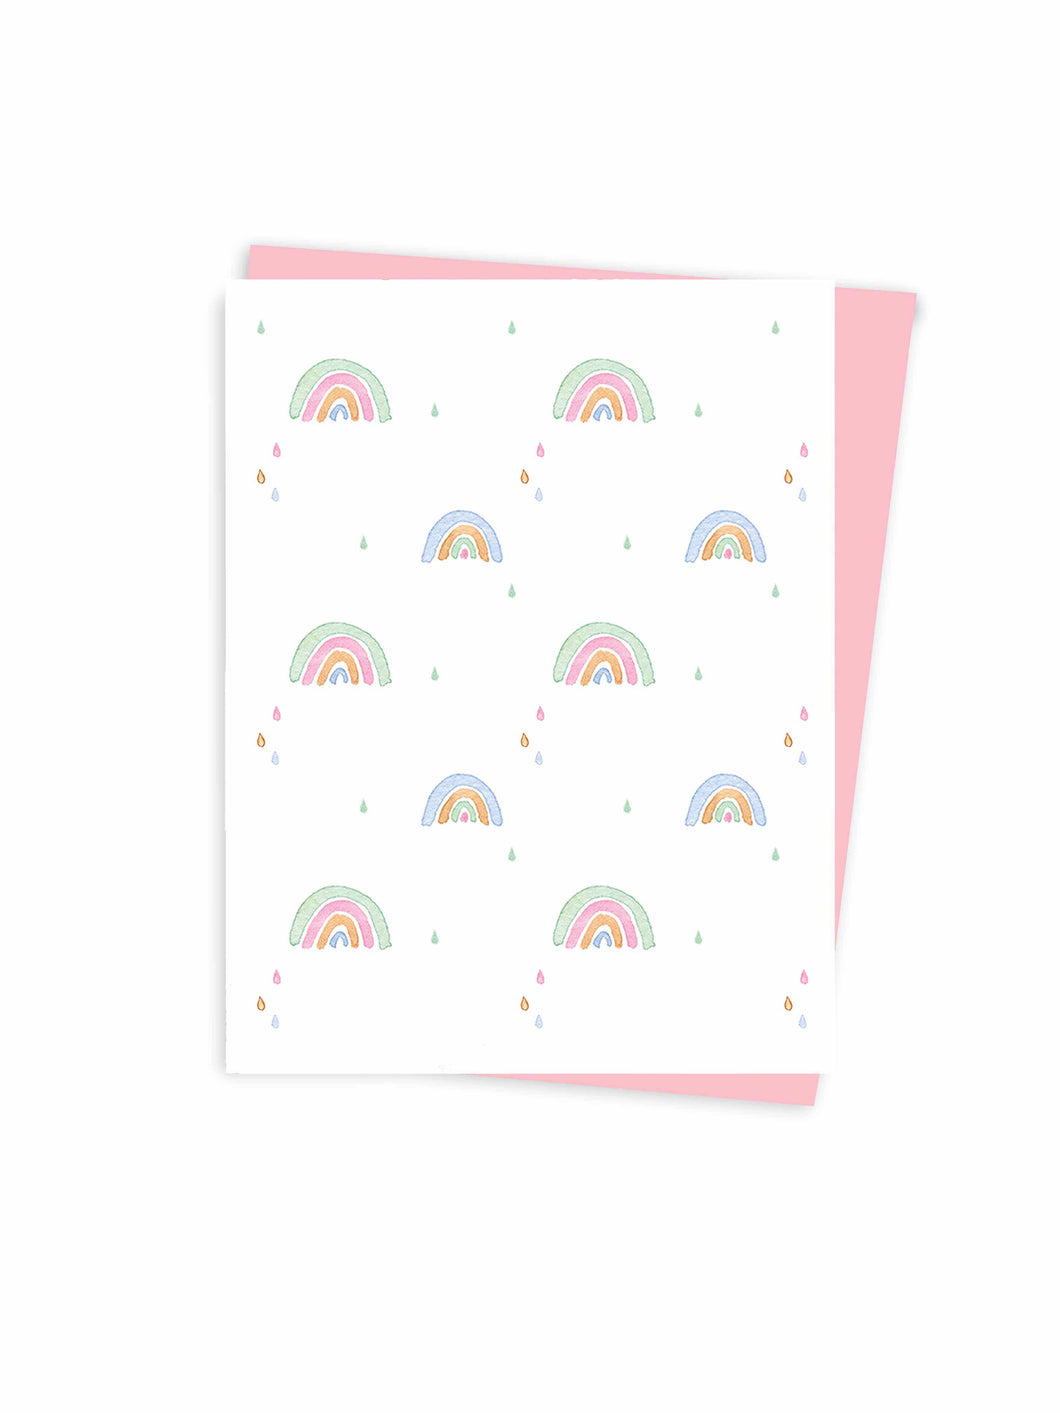 Rainbow Card